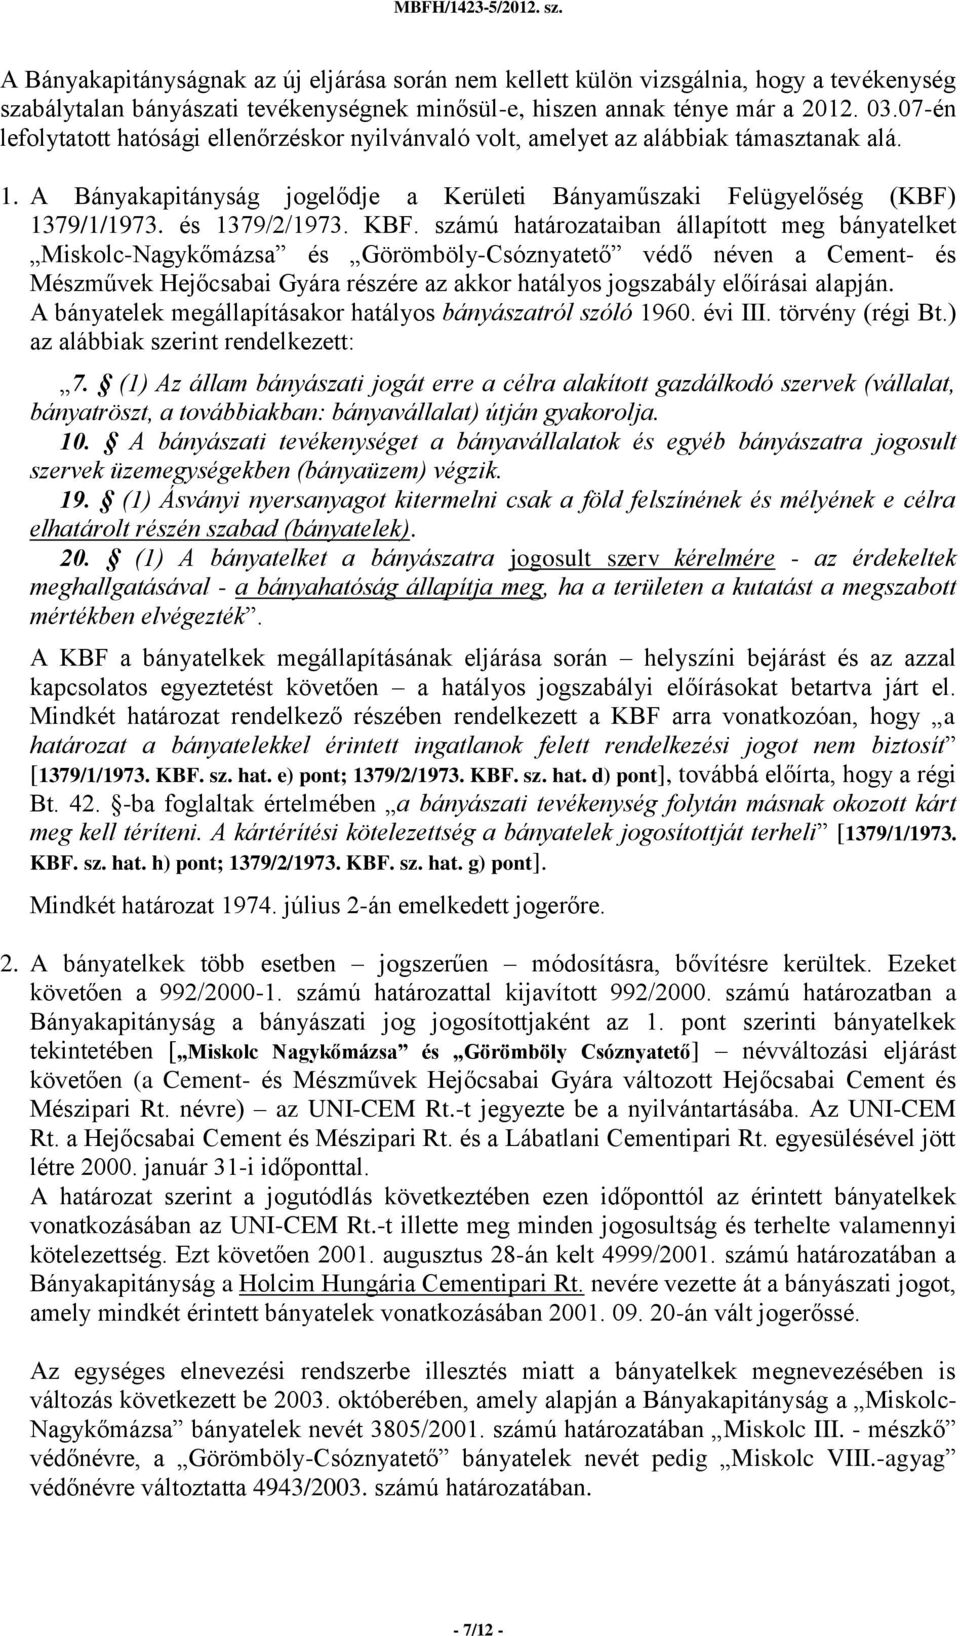 KBF. számú határozataiban állapított meg bányatelket Miskolc-Nagykőmázsa és Görömböly-Csóznyatető védő néven a Cement- és Mészművek Hejőcsabai Gyára részére az akkor hatályos jogszabály előírásai